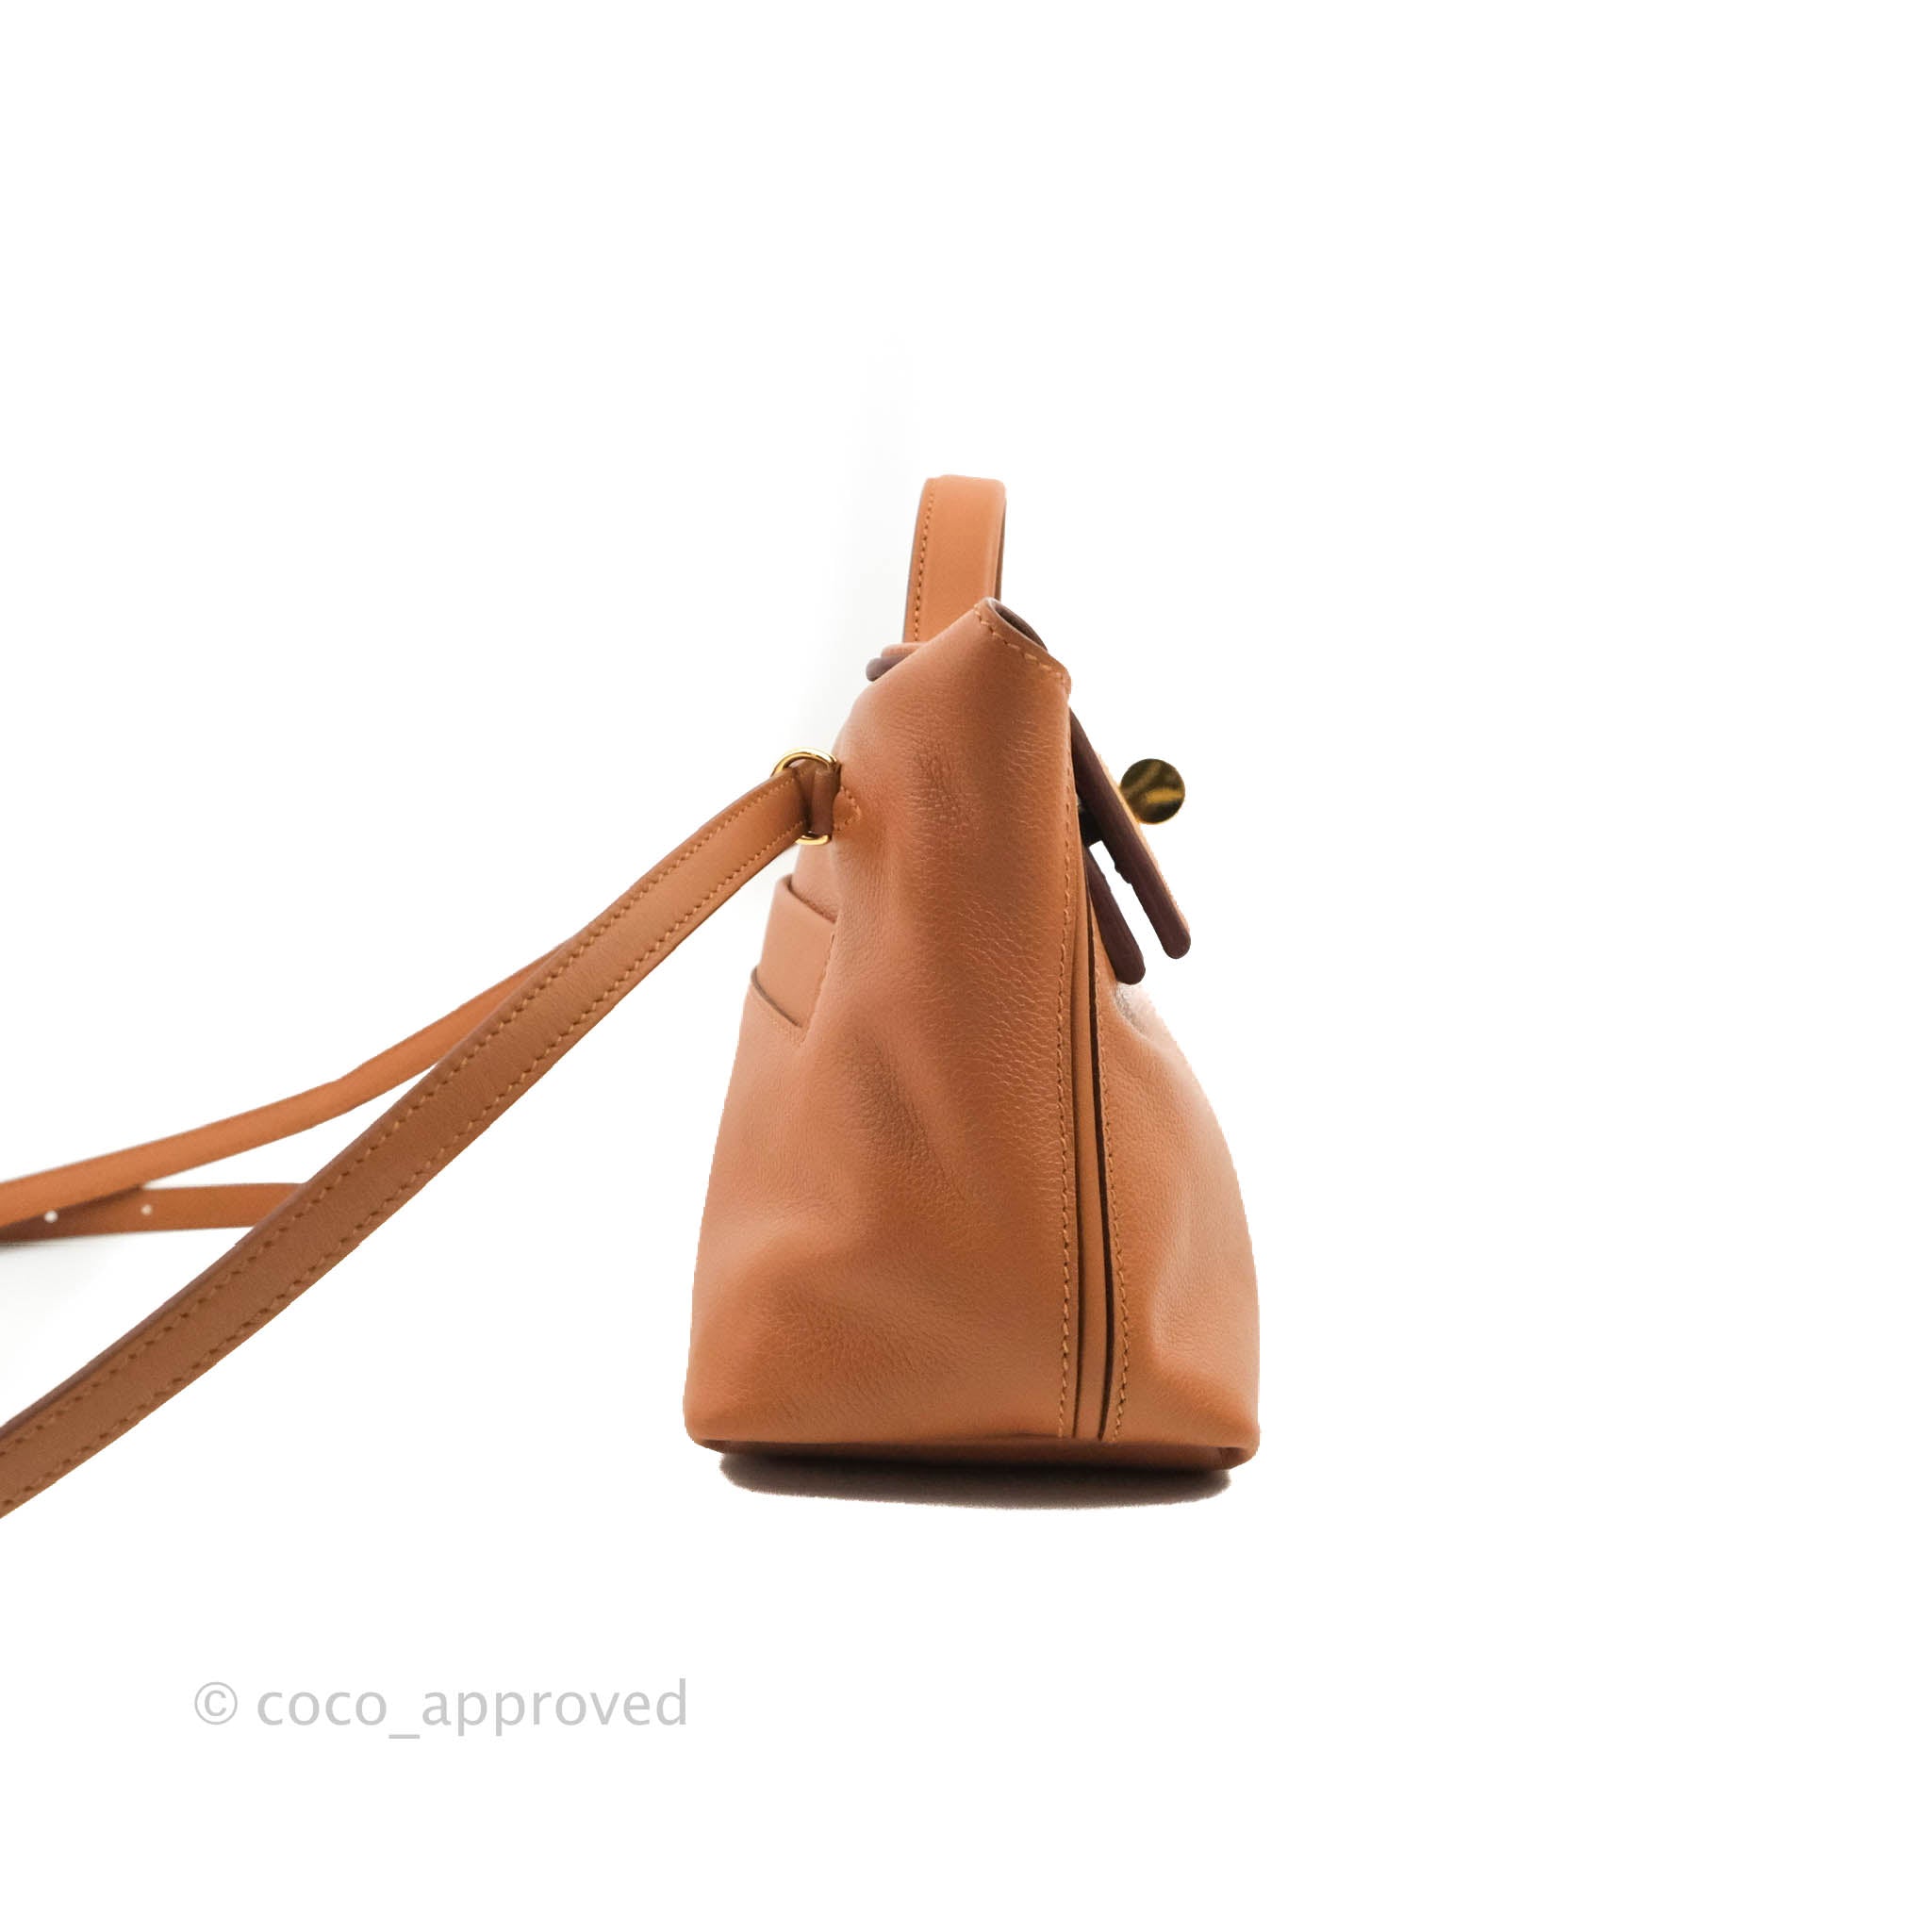 Meet the @hermes 24/24 mini bag AKA our new crush 🤩 تعرفي على